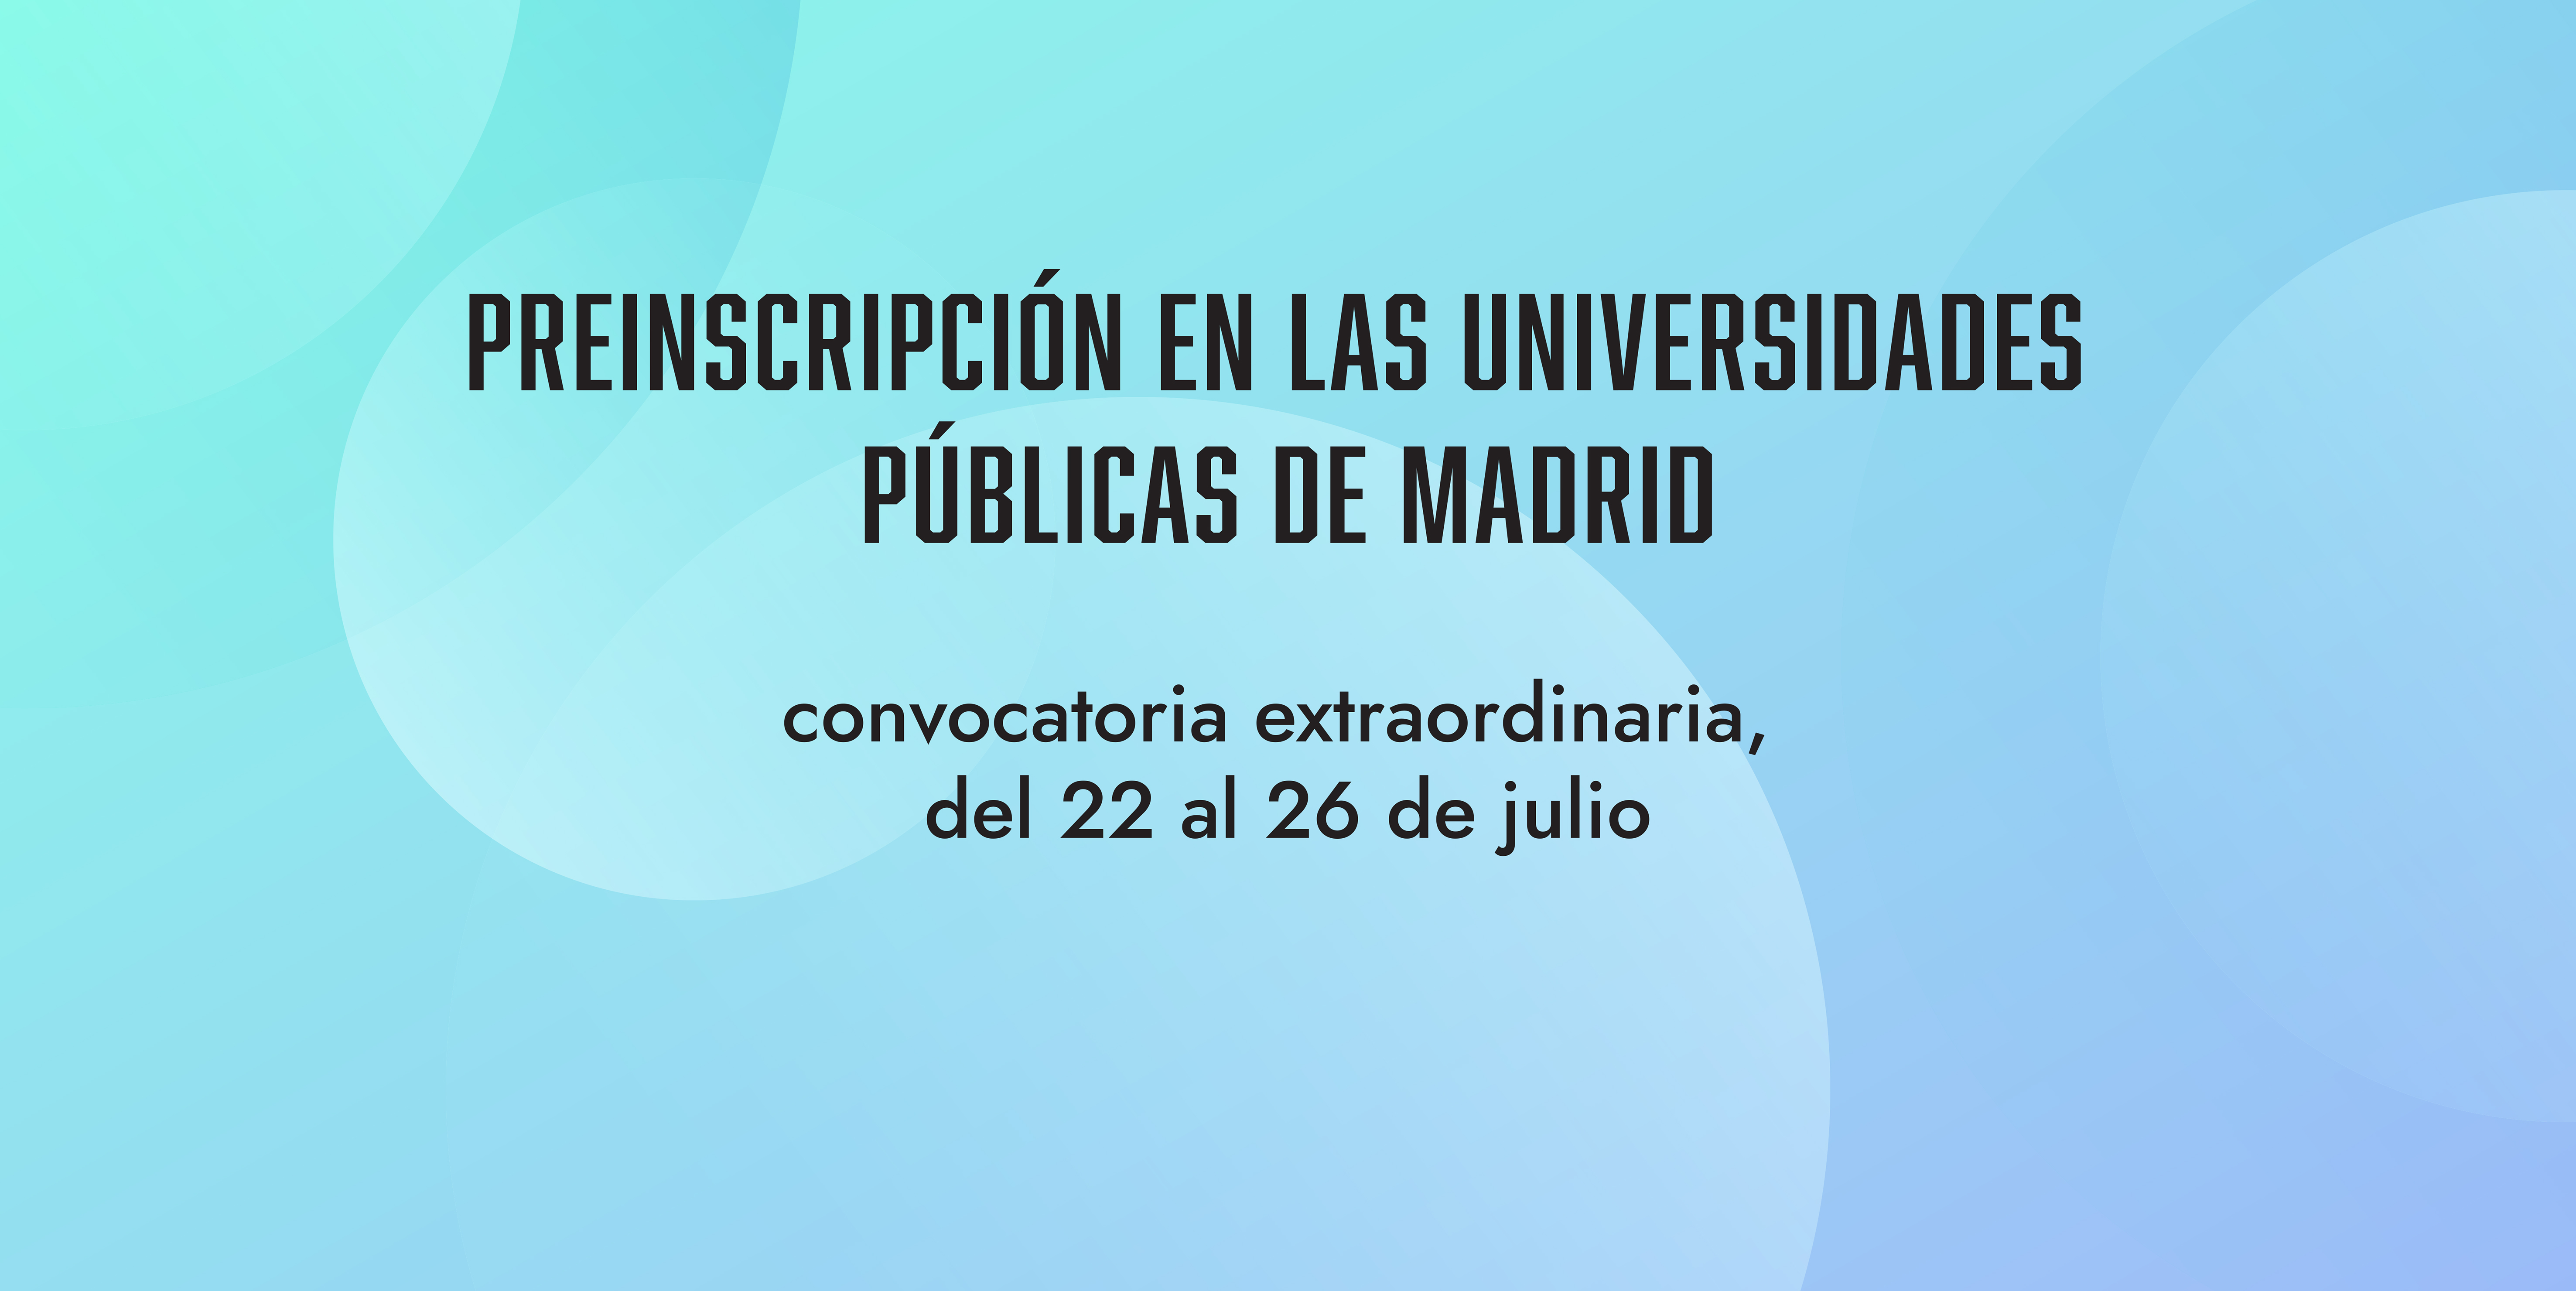 Solo para grados con plazas libres en el Distrito único de Madrid